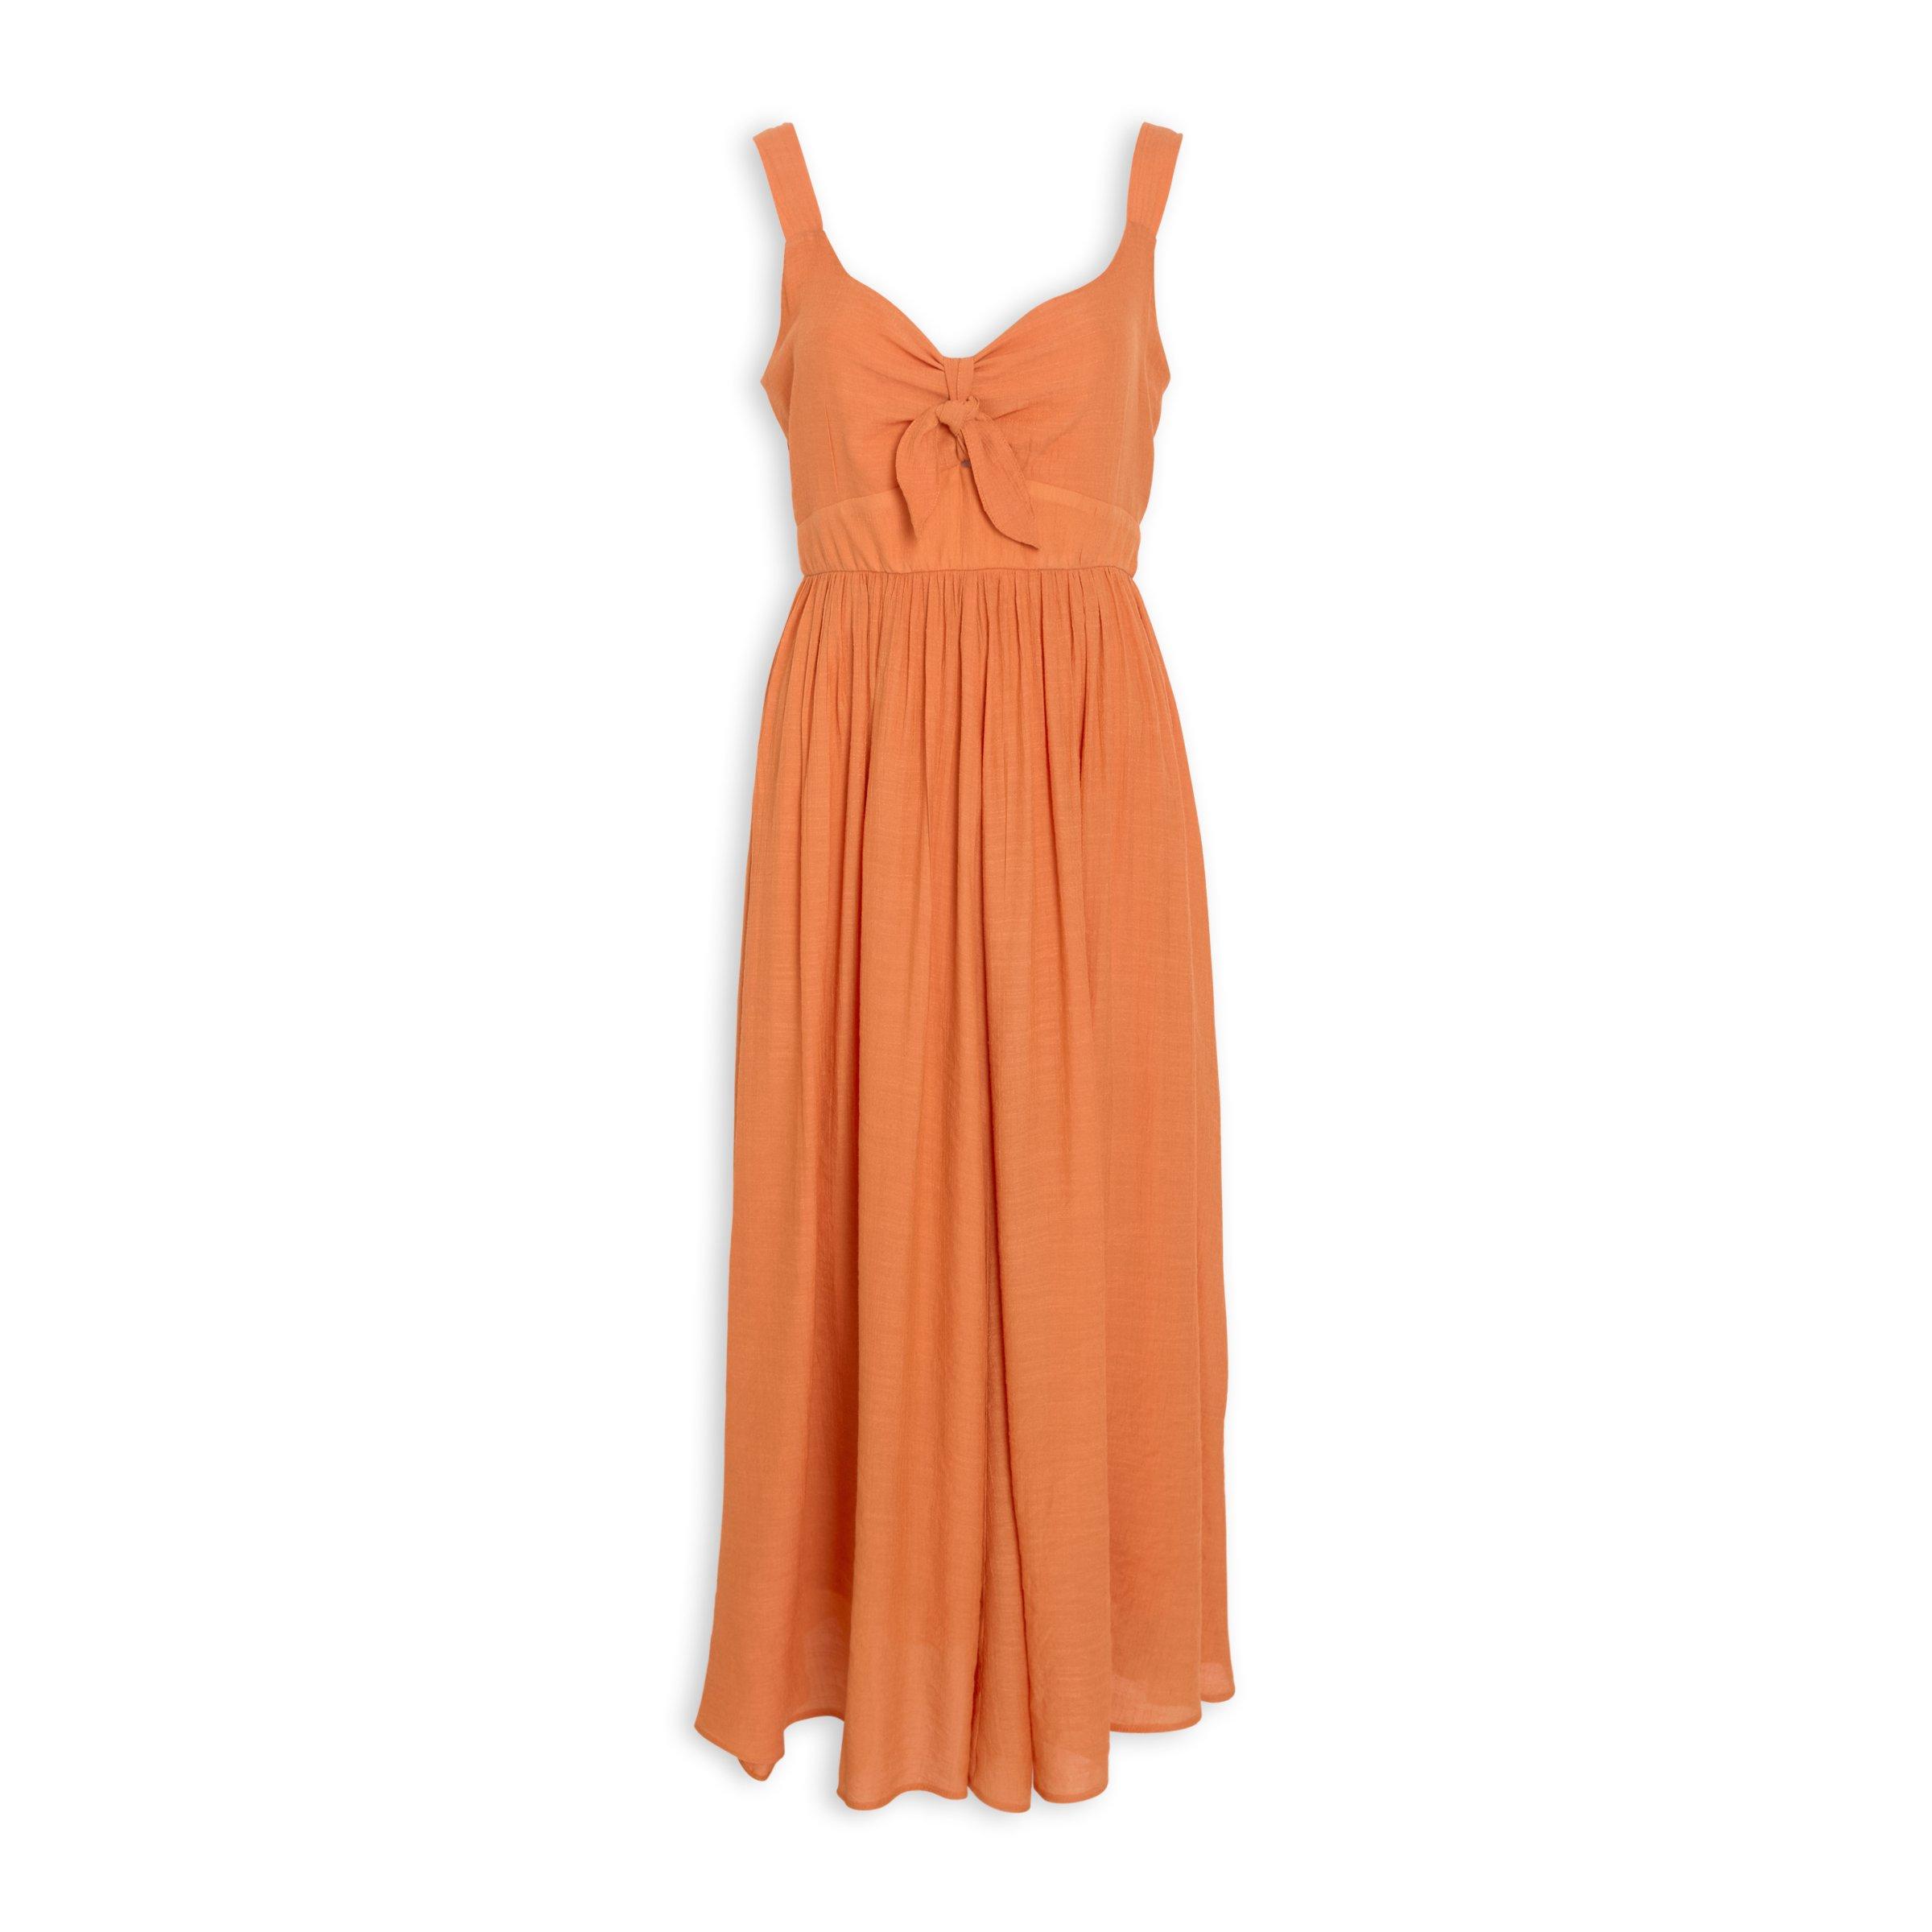 Buy Truworths Orange Tie Front Dress Online | Truworths